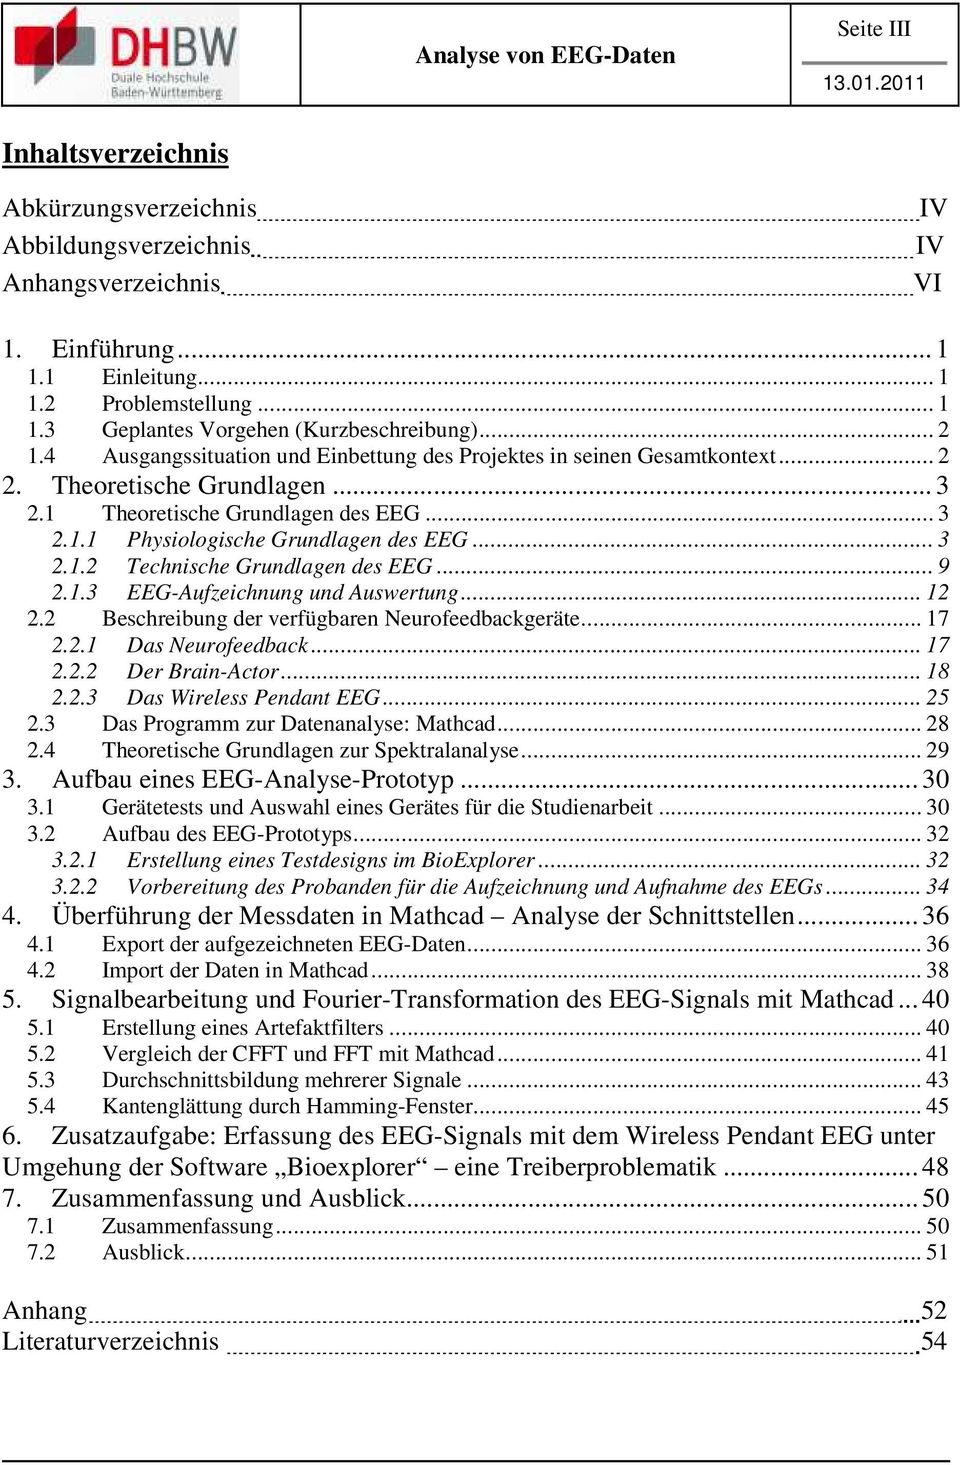 .. 3 2.1.2 Technische Grundlagen des EEG... 9 2.1.3 EEG-Aufzeichnung und Auswertung... 12 2.2 Beschreibung der verfügbaren Neurofeedbackgeräte... 17 2.2.1 Das Neurofeedback... 17 2.2.2 Der Brain-Actor.